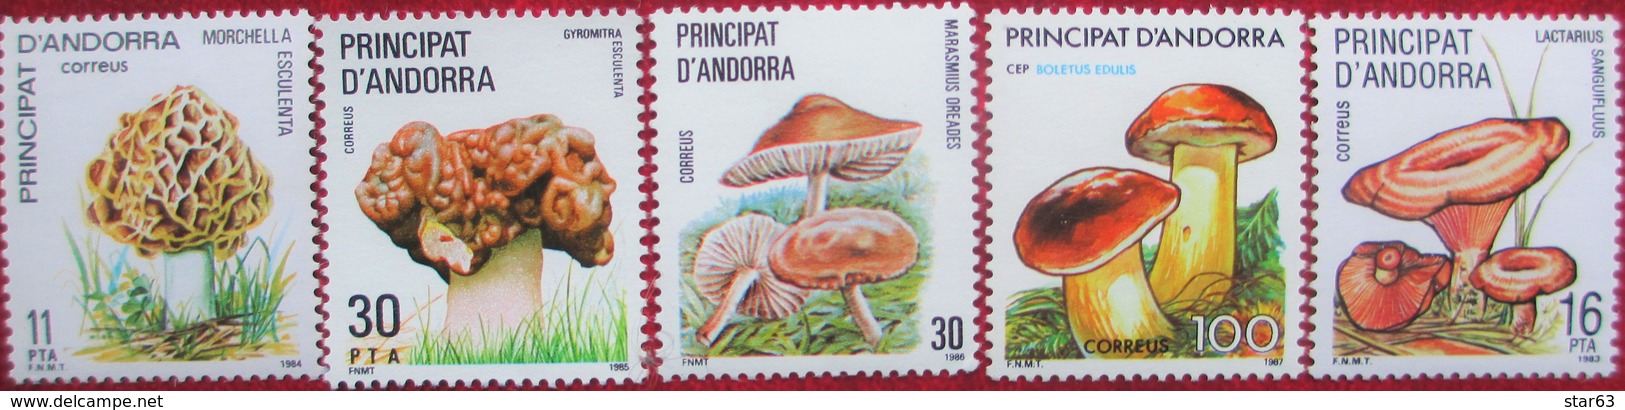 Andorra   Mushrooms  5 V MNH - Mushrooms